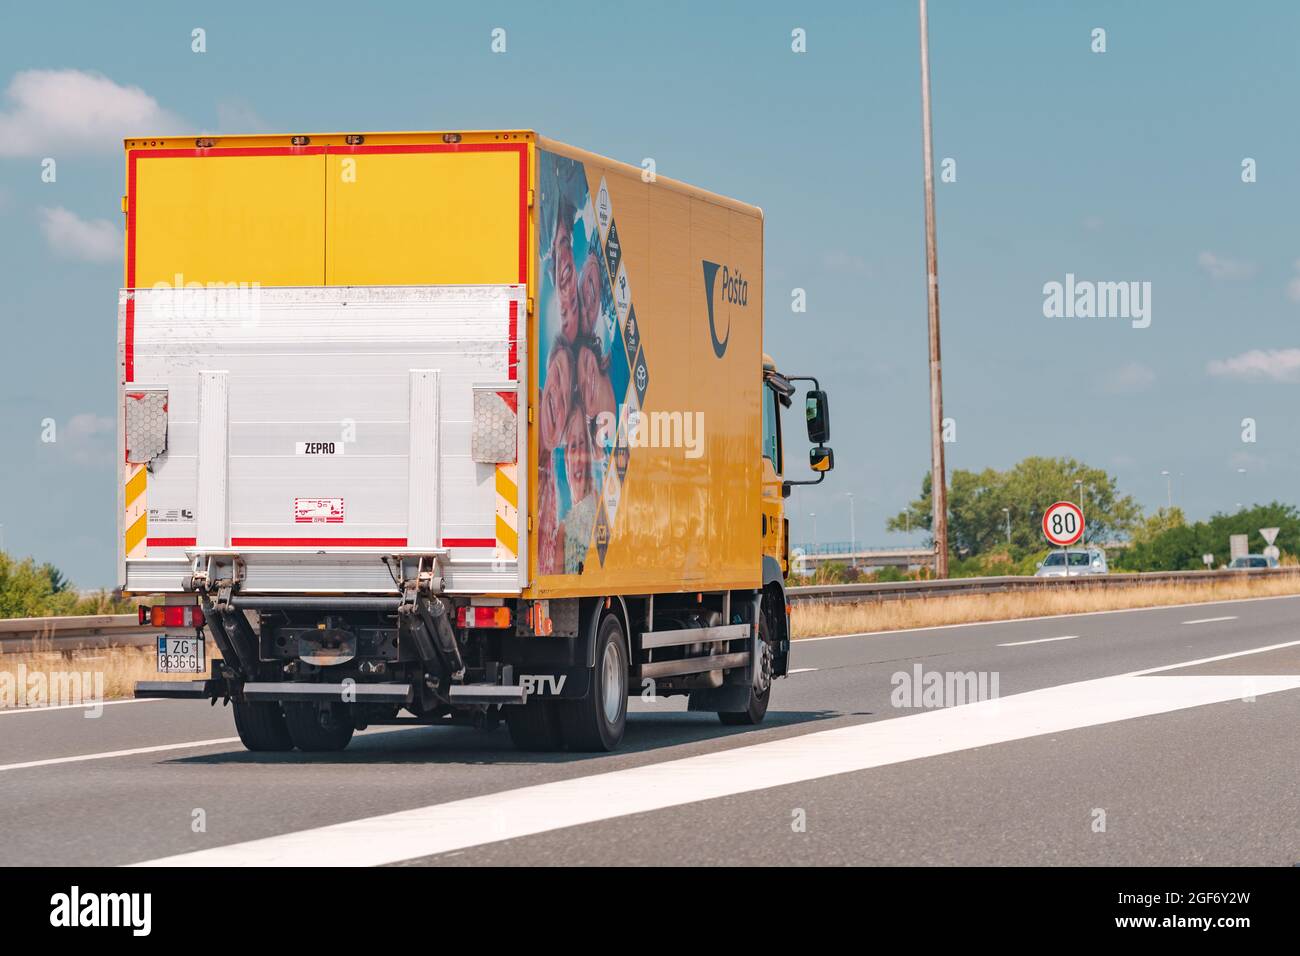 ZAGREB, CROATIE, JUILLET 20. 2021: Camion de livraison Croate Post (Hrvatska Posta) sur la route de Zagreb, illustration éditoriale. Poste croate norma Banque D'Images